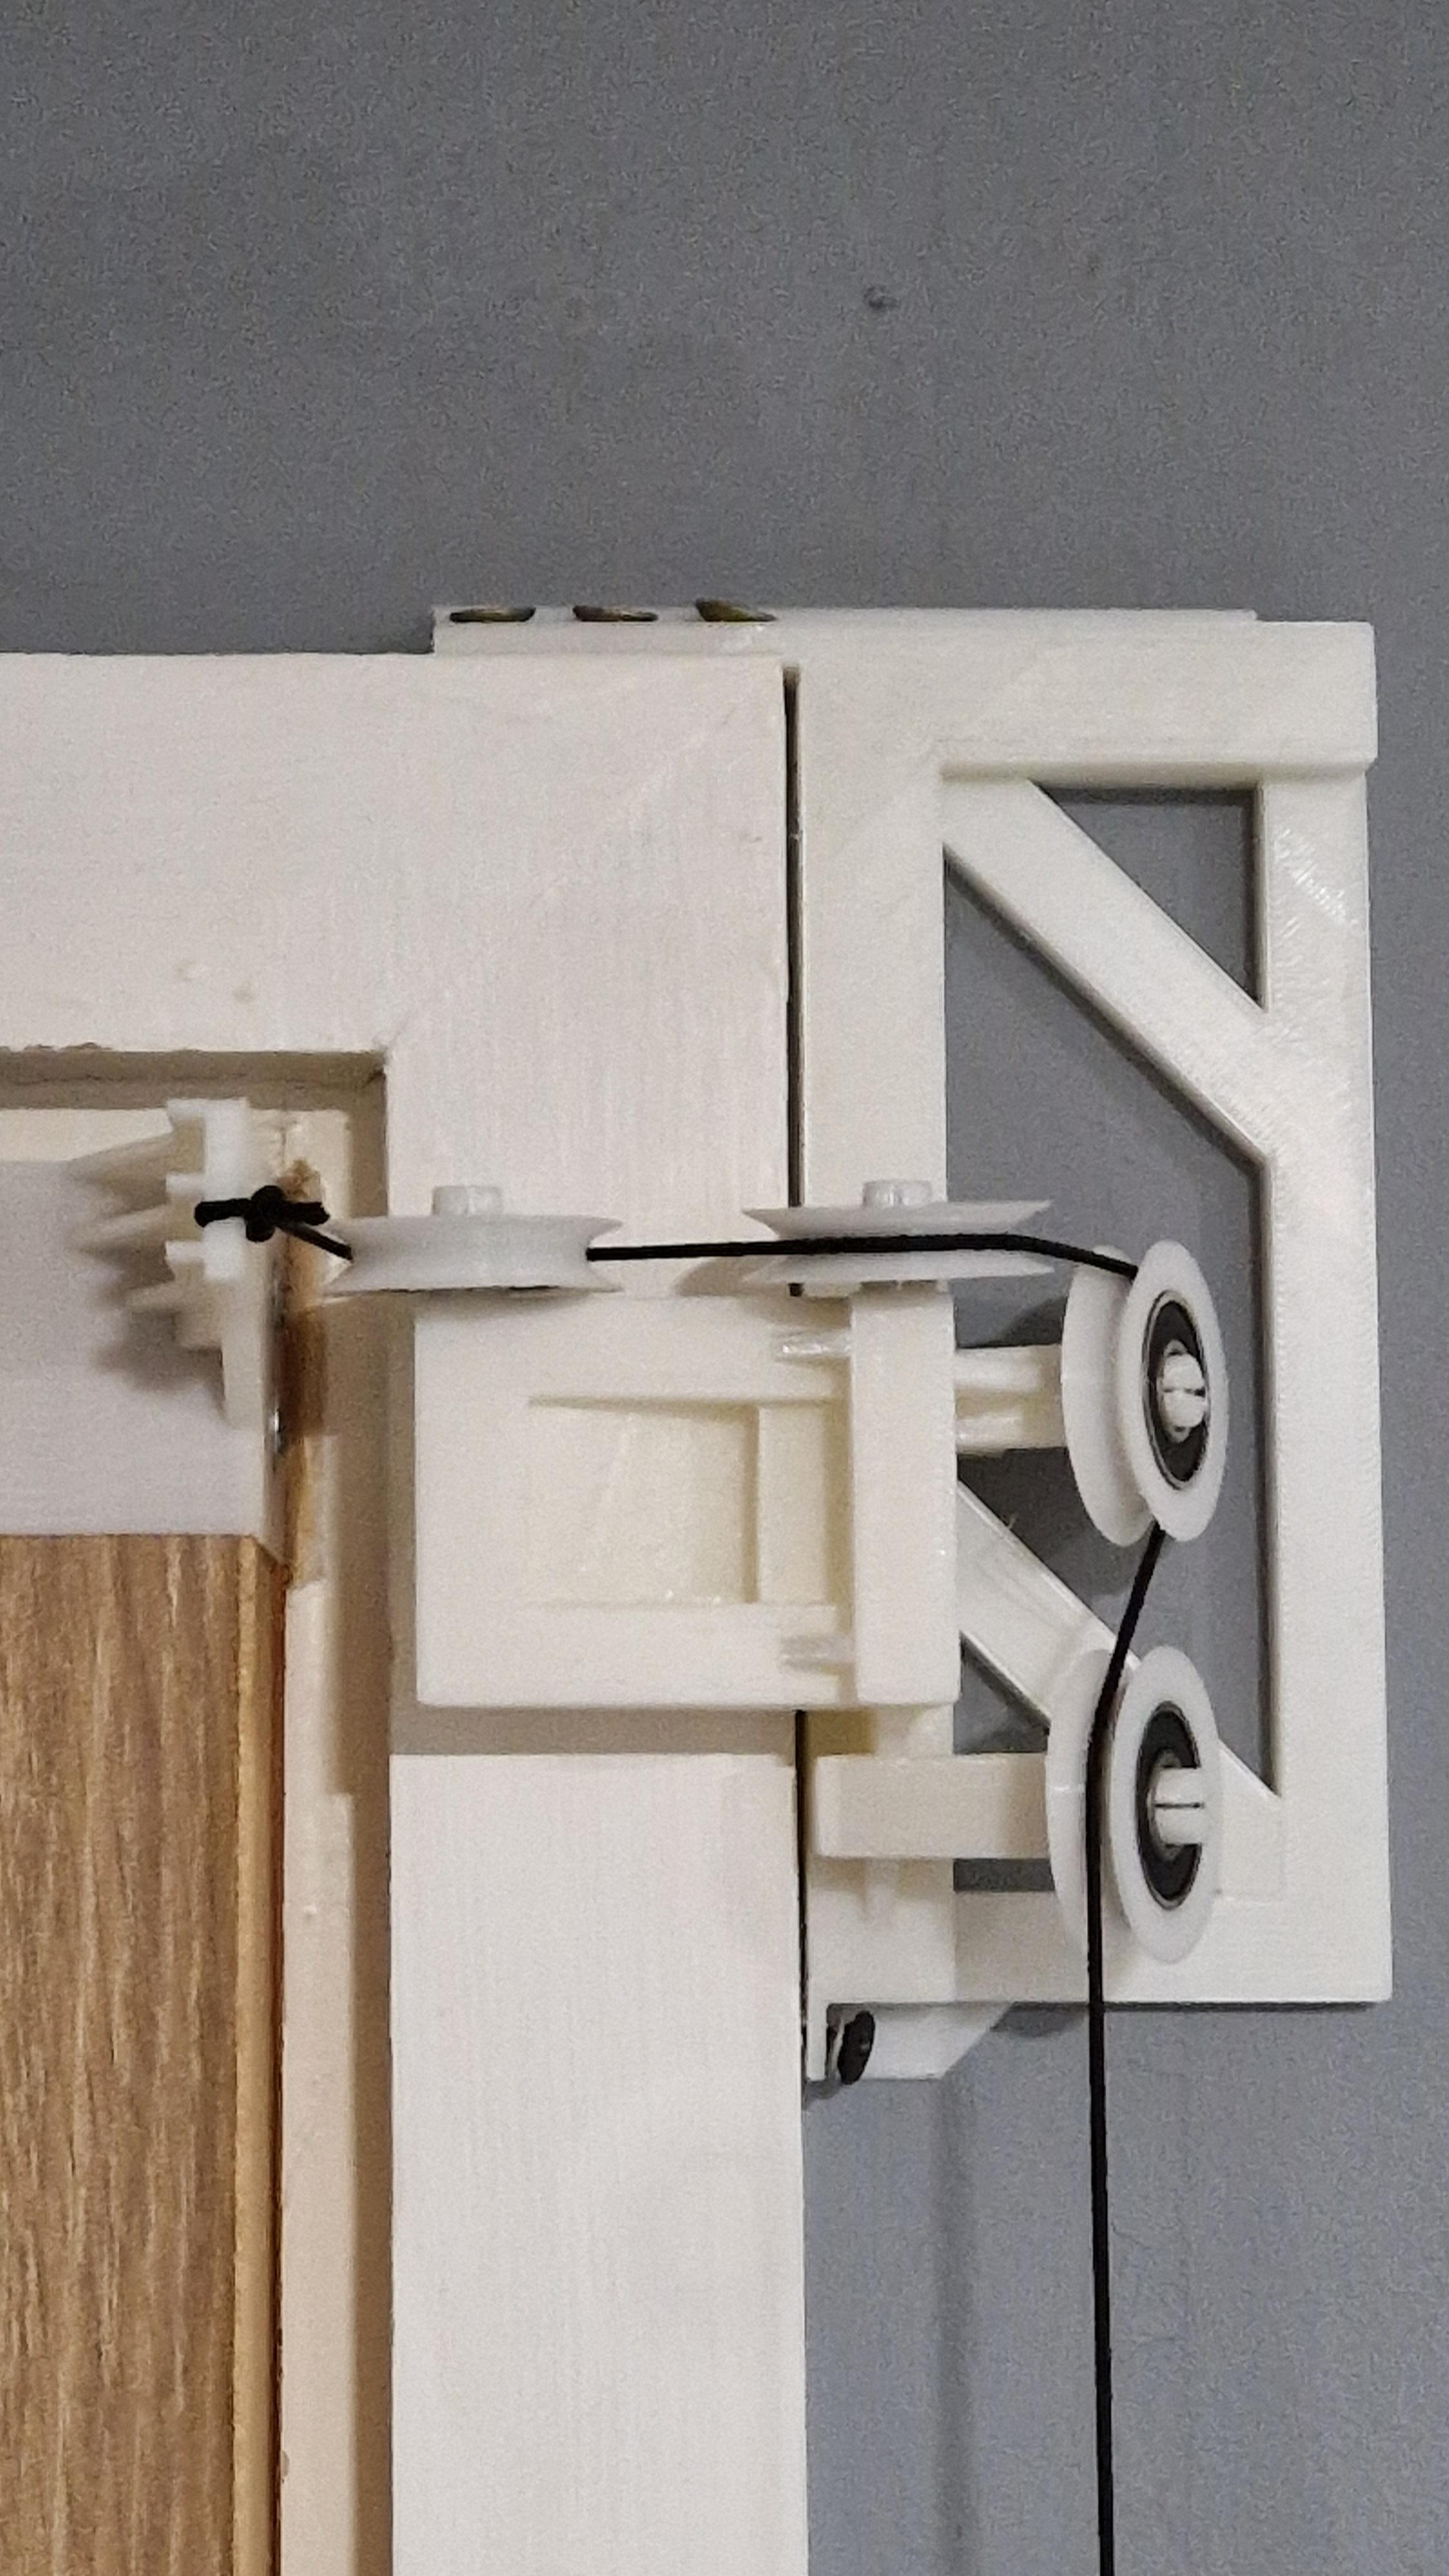 Door closer (print in place design) 3d model